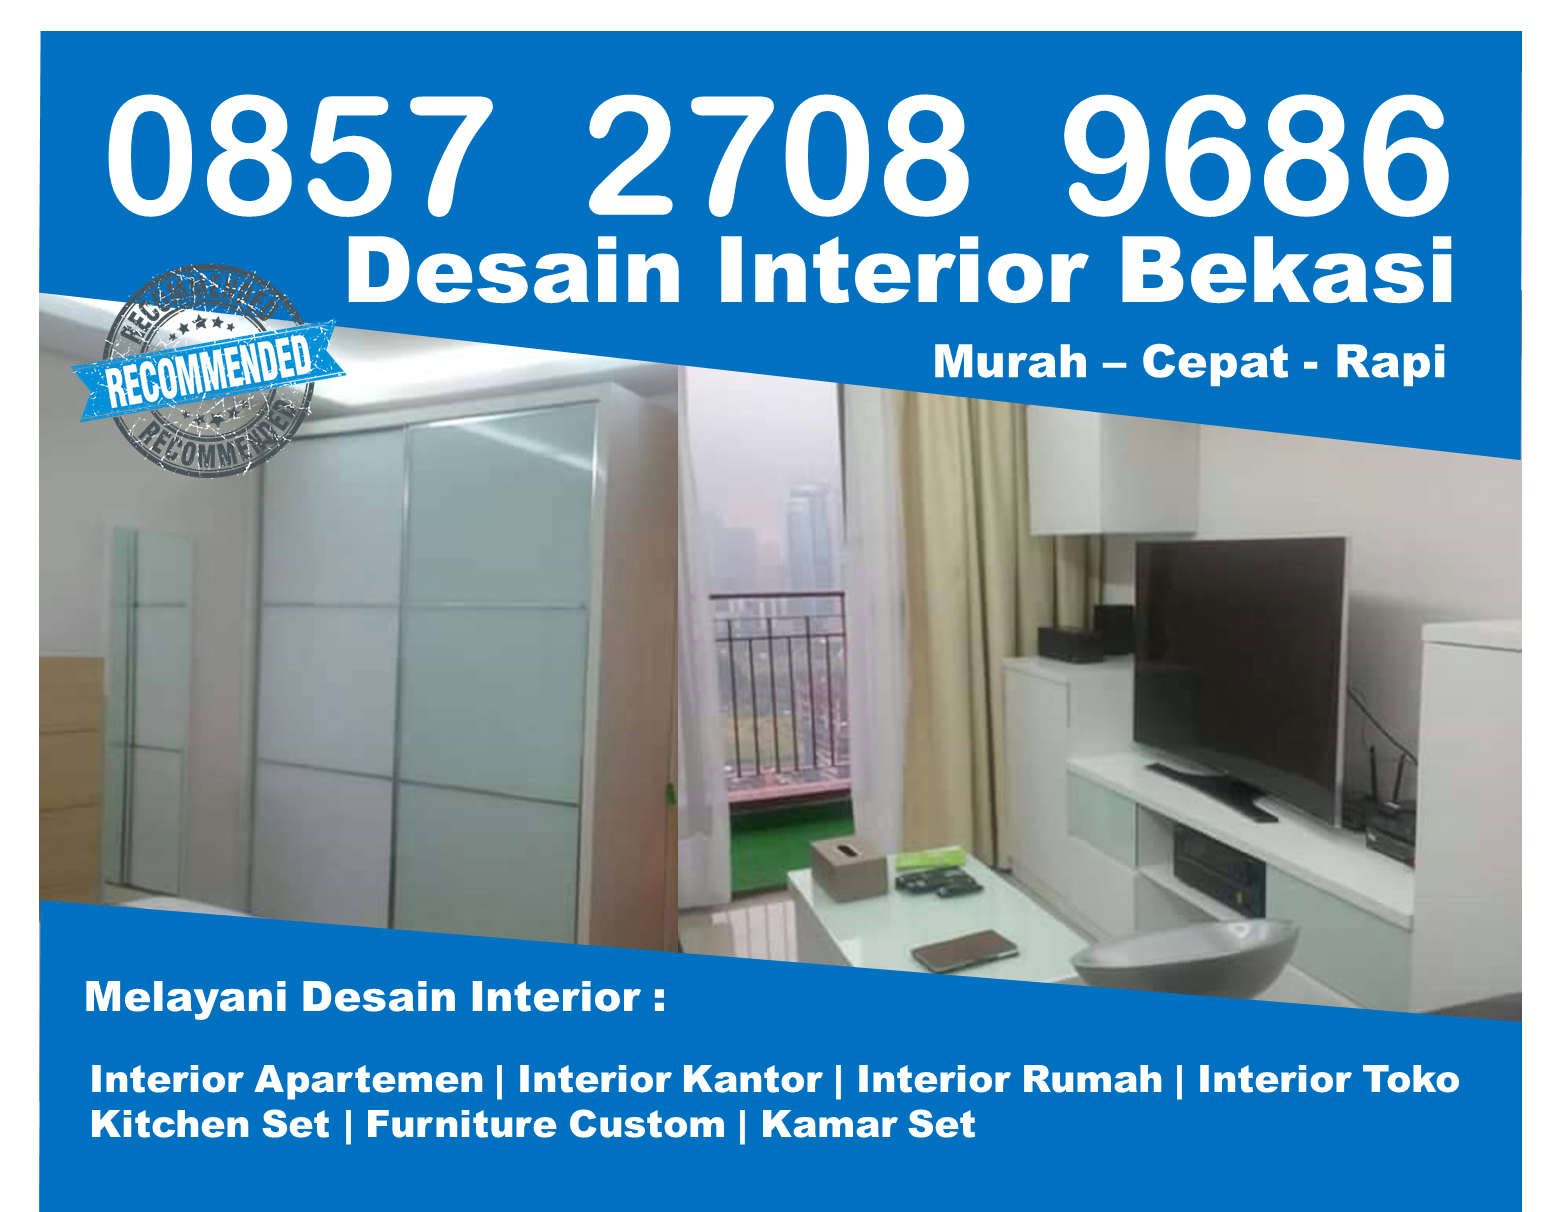 Telp 0857 2708 9686 Indosat Biaya Desain Interior Rumah Minimalis